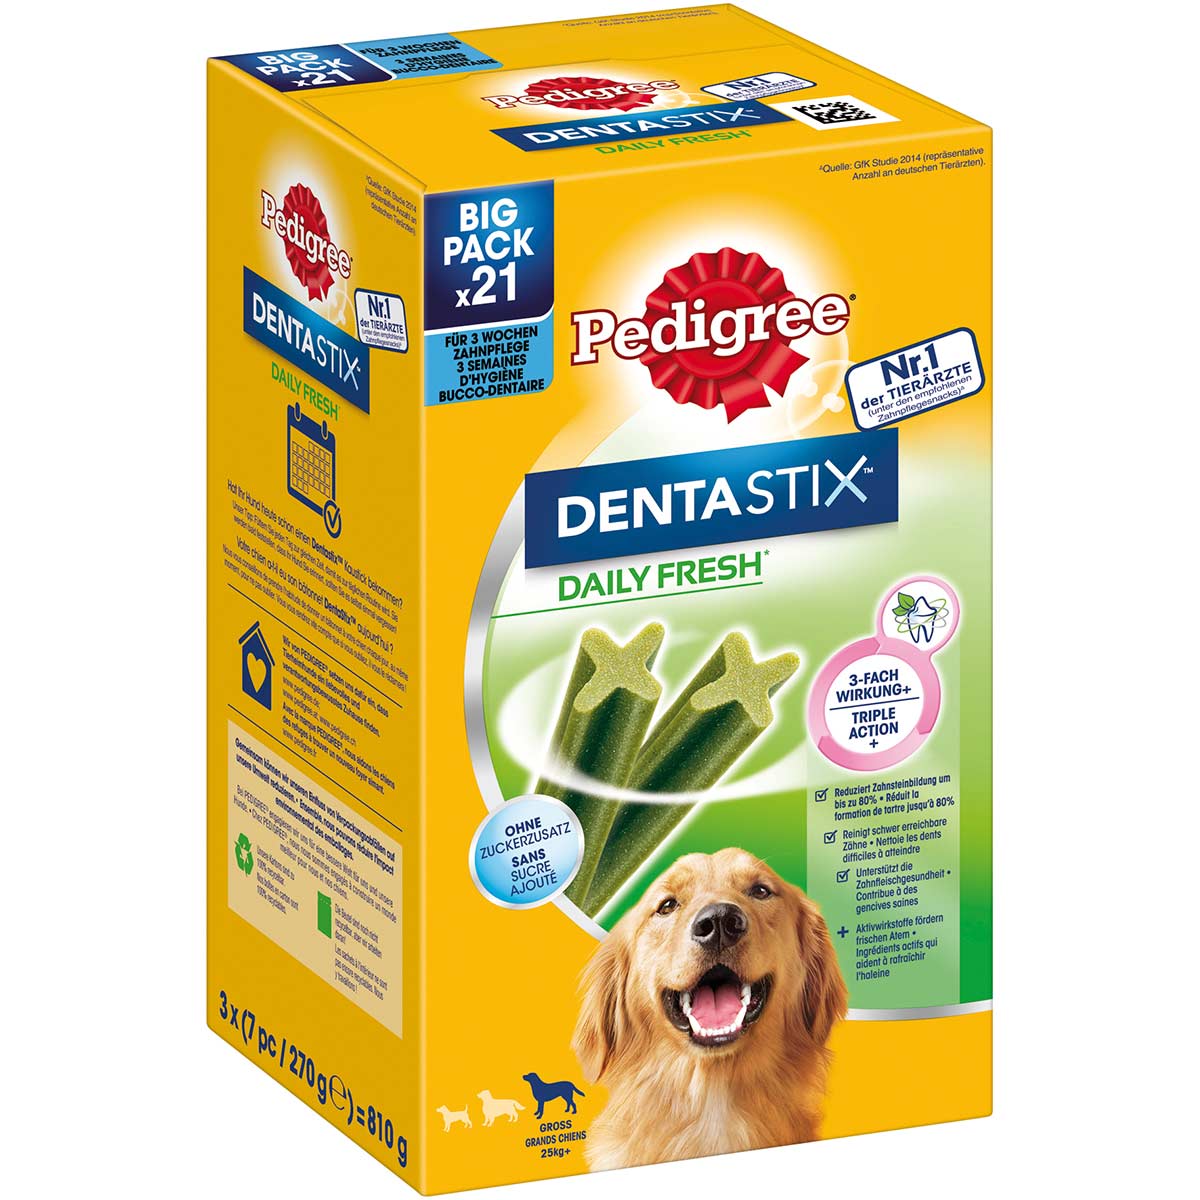 Pedigree DentaStix Daily Fresh für Große Hunde 4x21 Stück von Pedigree